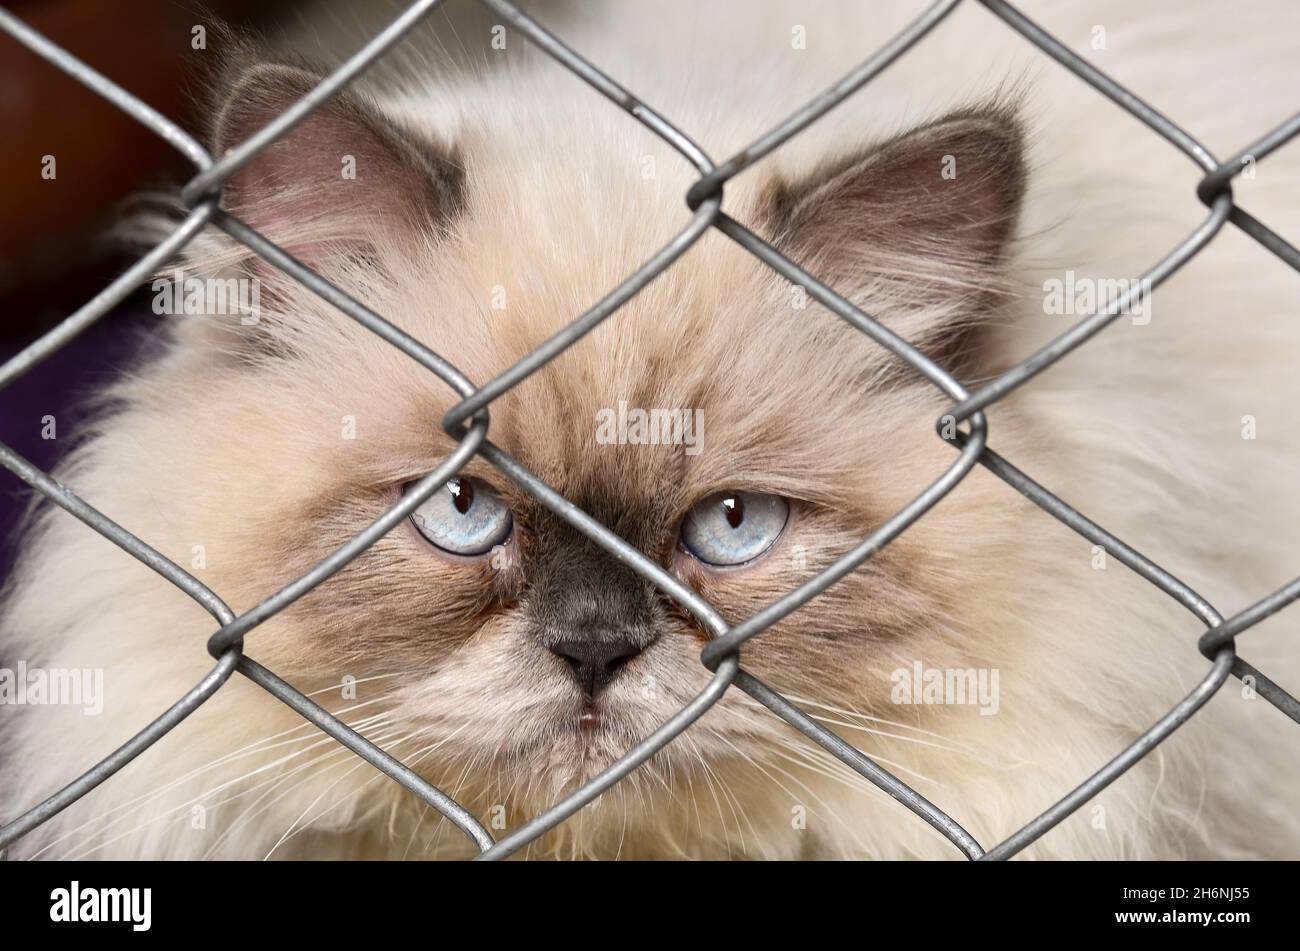 Cat looking through steel net Stock Photo